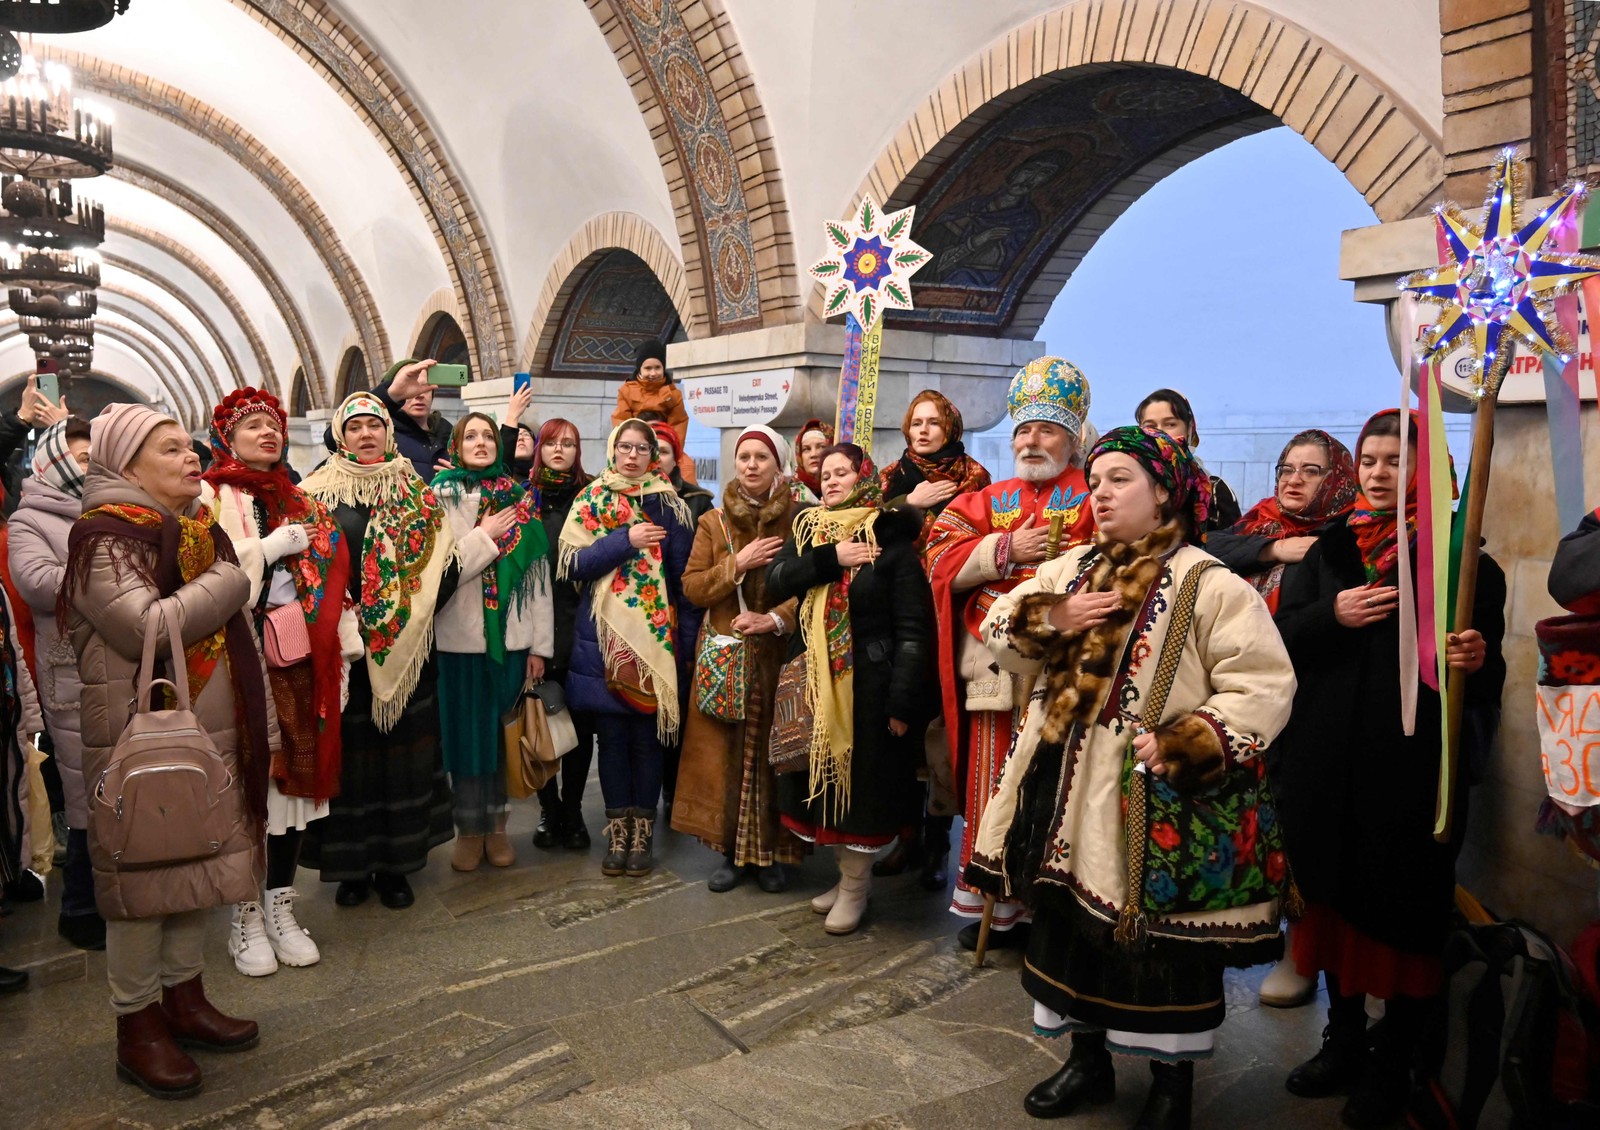 Moradores em trajes tradicionais cantam canções de Natal dentro de uma estação de metrô em Kyiv — Foto: SERGIO CHUZAVKOV/AFP